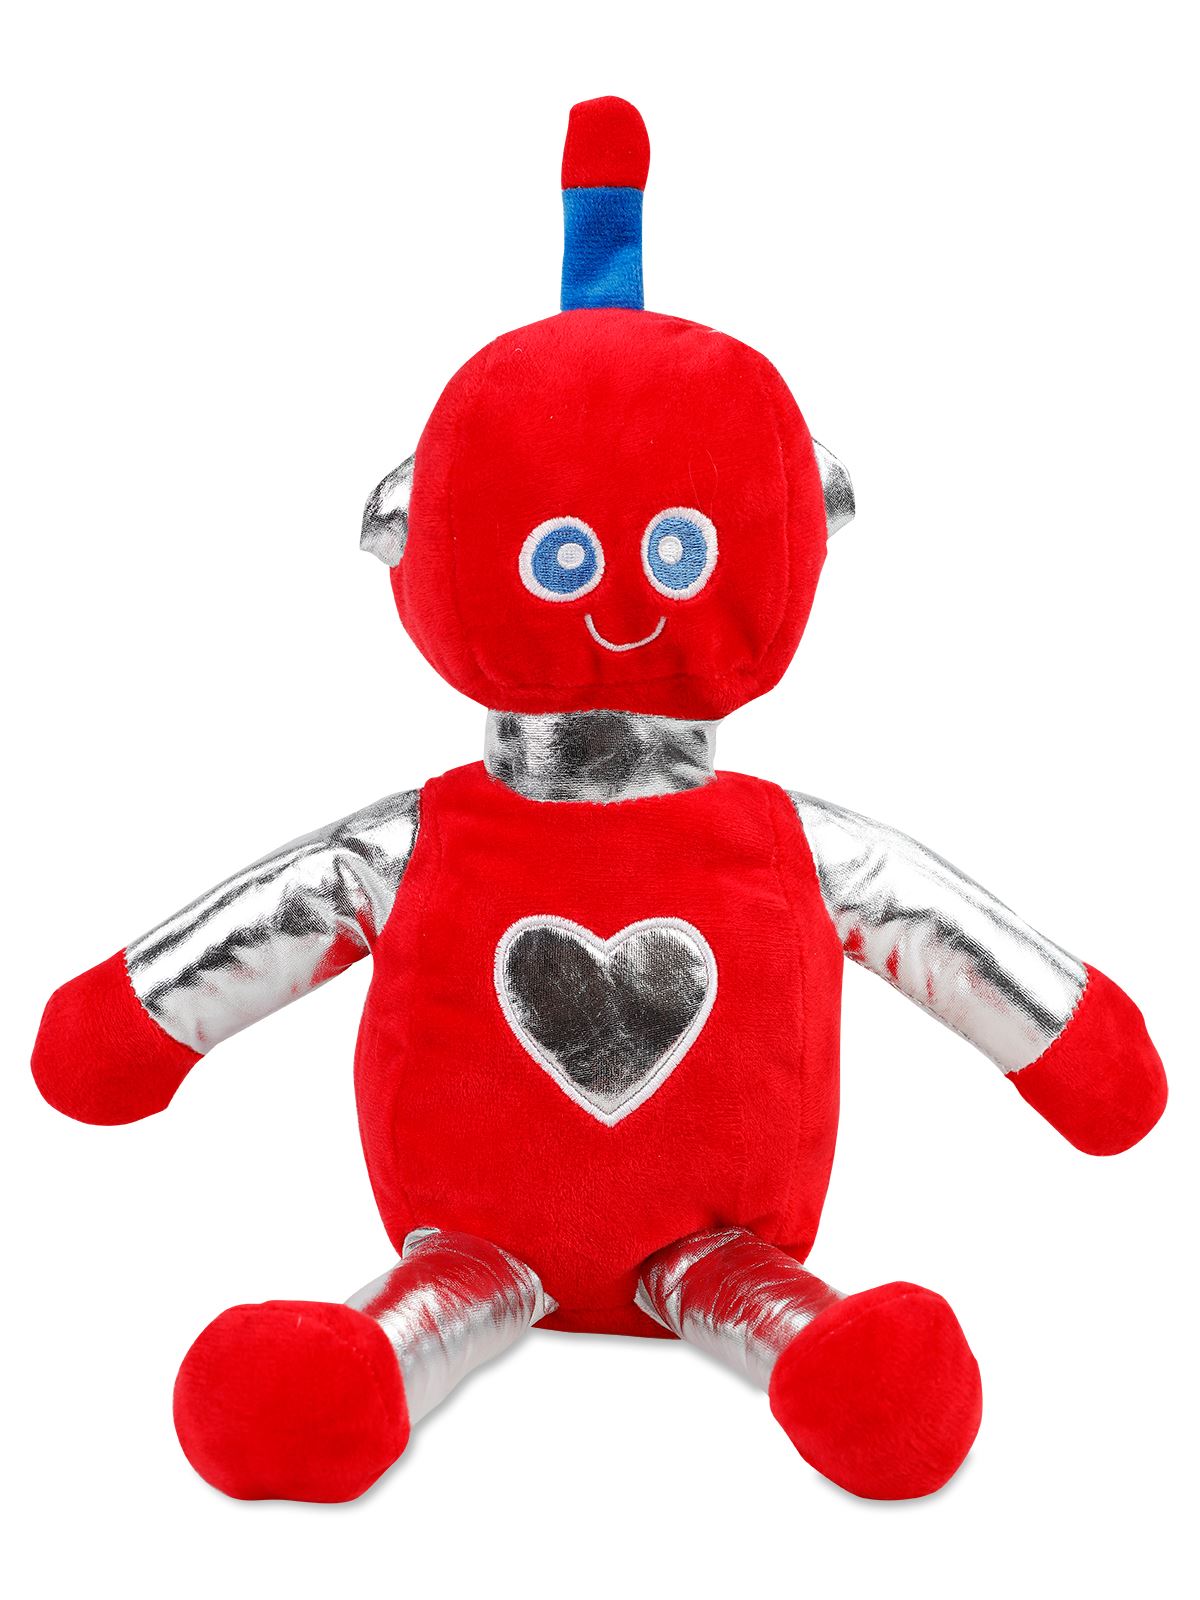 Halley Oyuncak Peluş Robotlar 35 cm Kırmızı